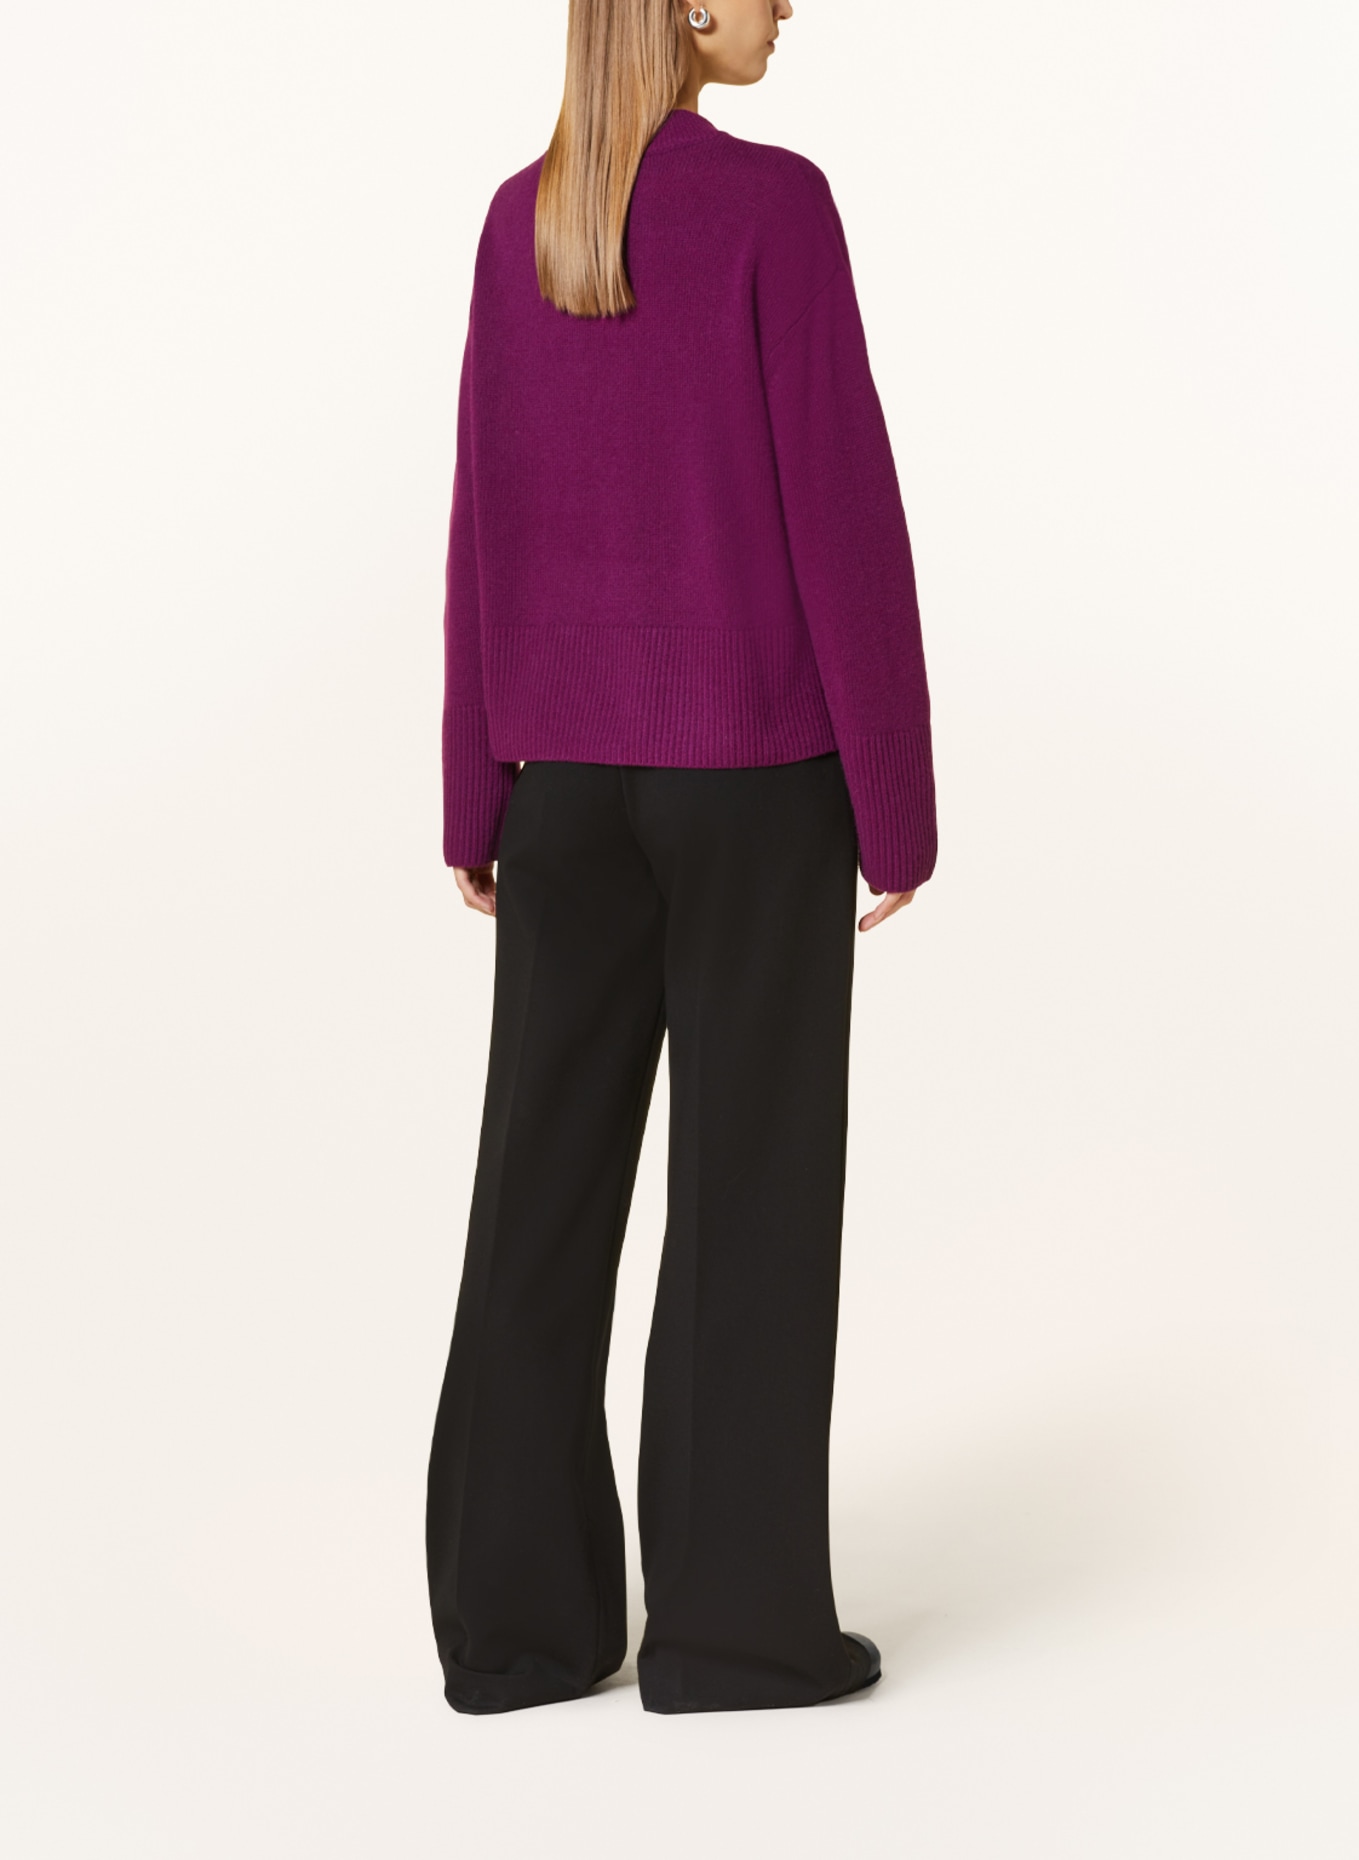 MRS & HUGS Cashmere sweater, Color: DARK PURPLE (Image 3)